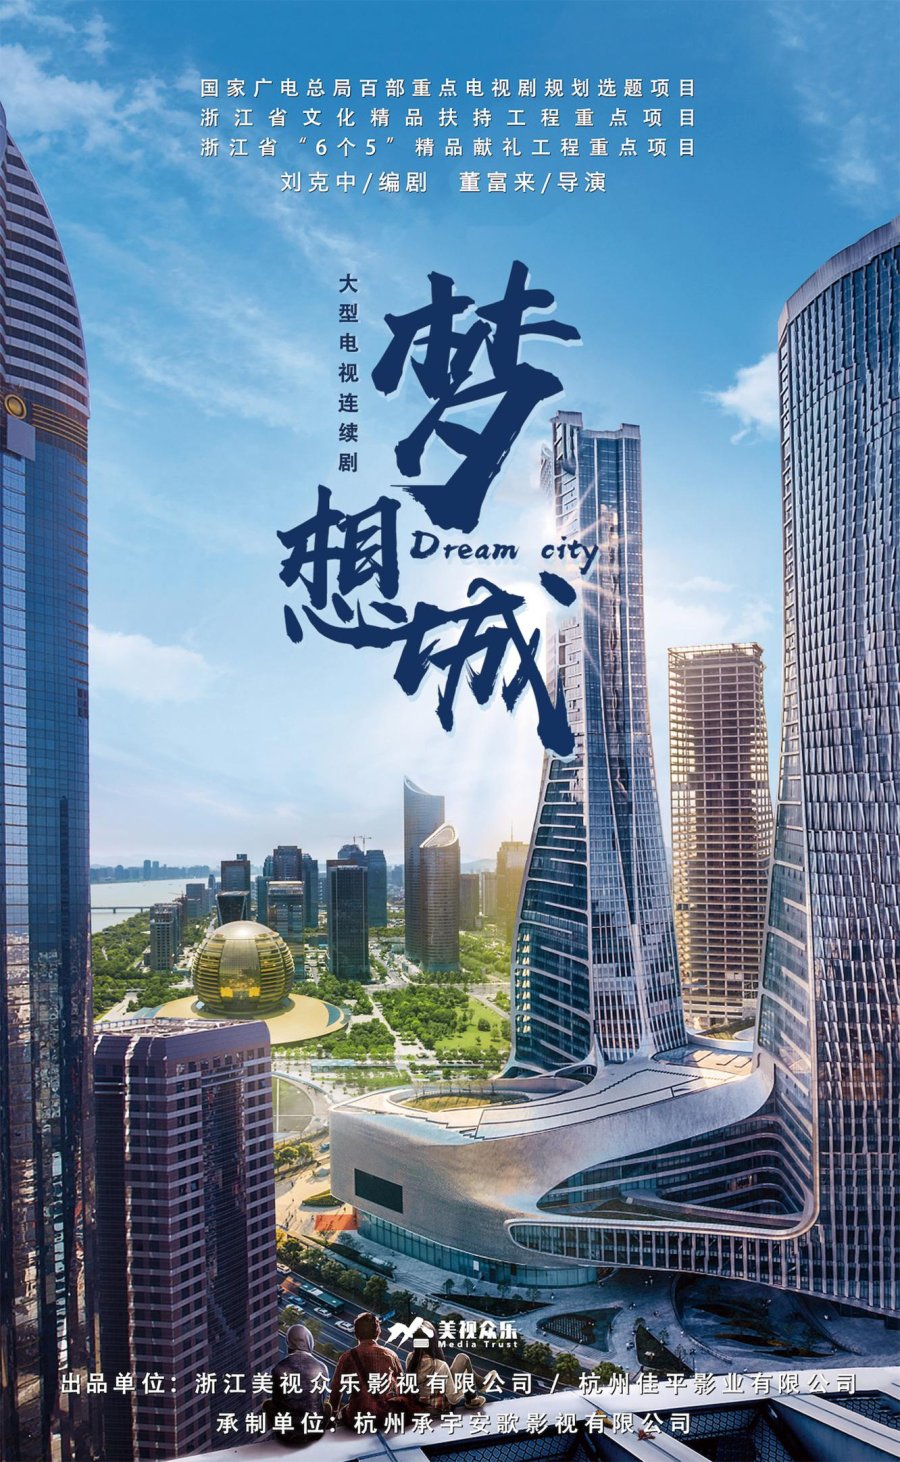 [Upcoming Mainland Chinese Drama 2022] Dream City 梦想城 - Mainland China